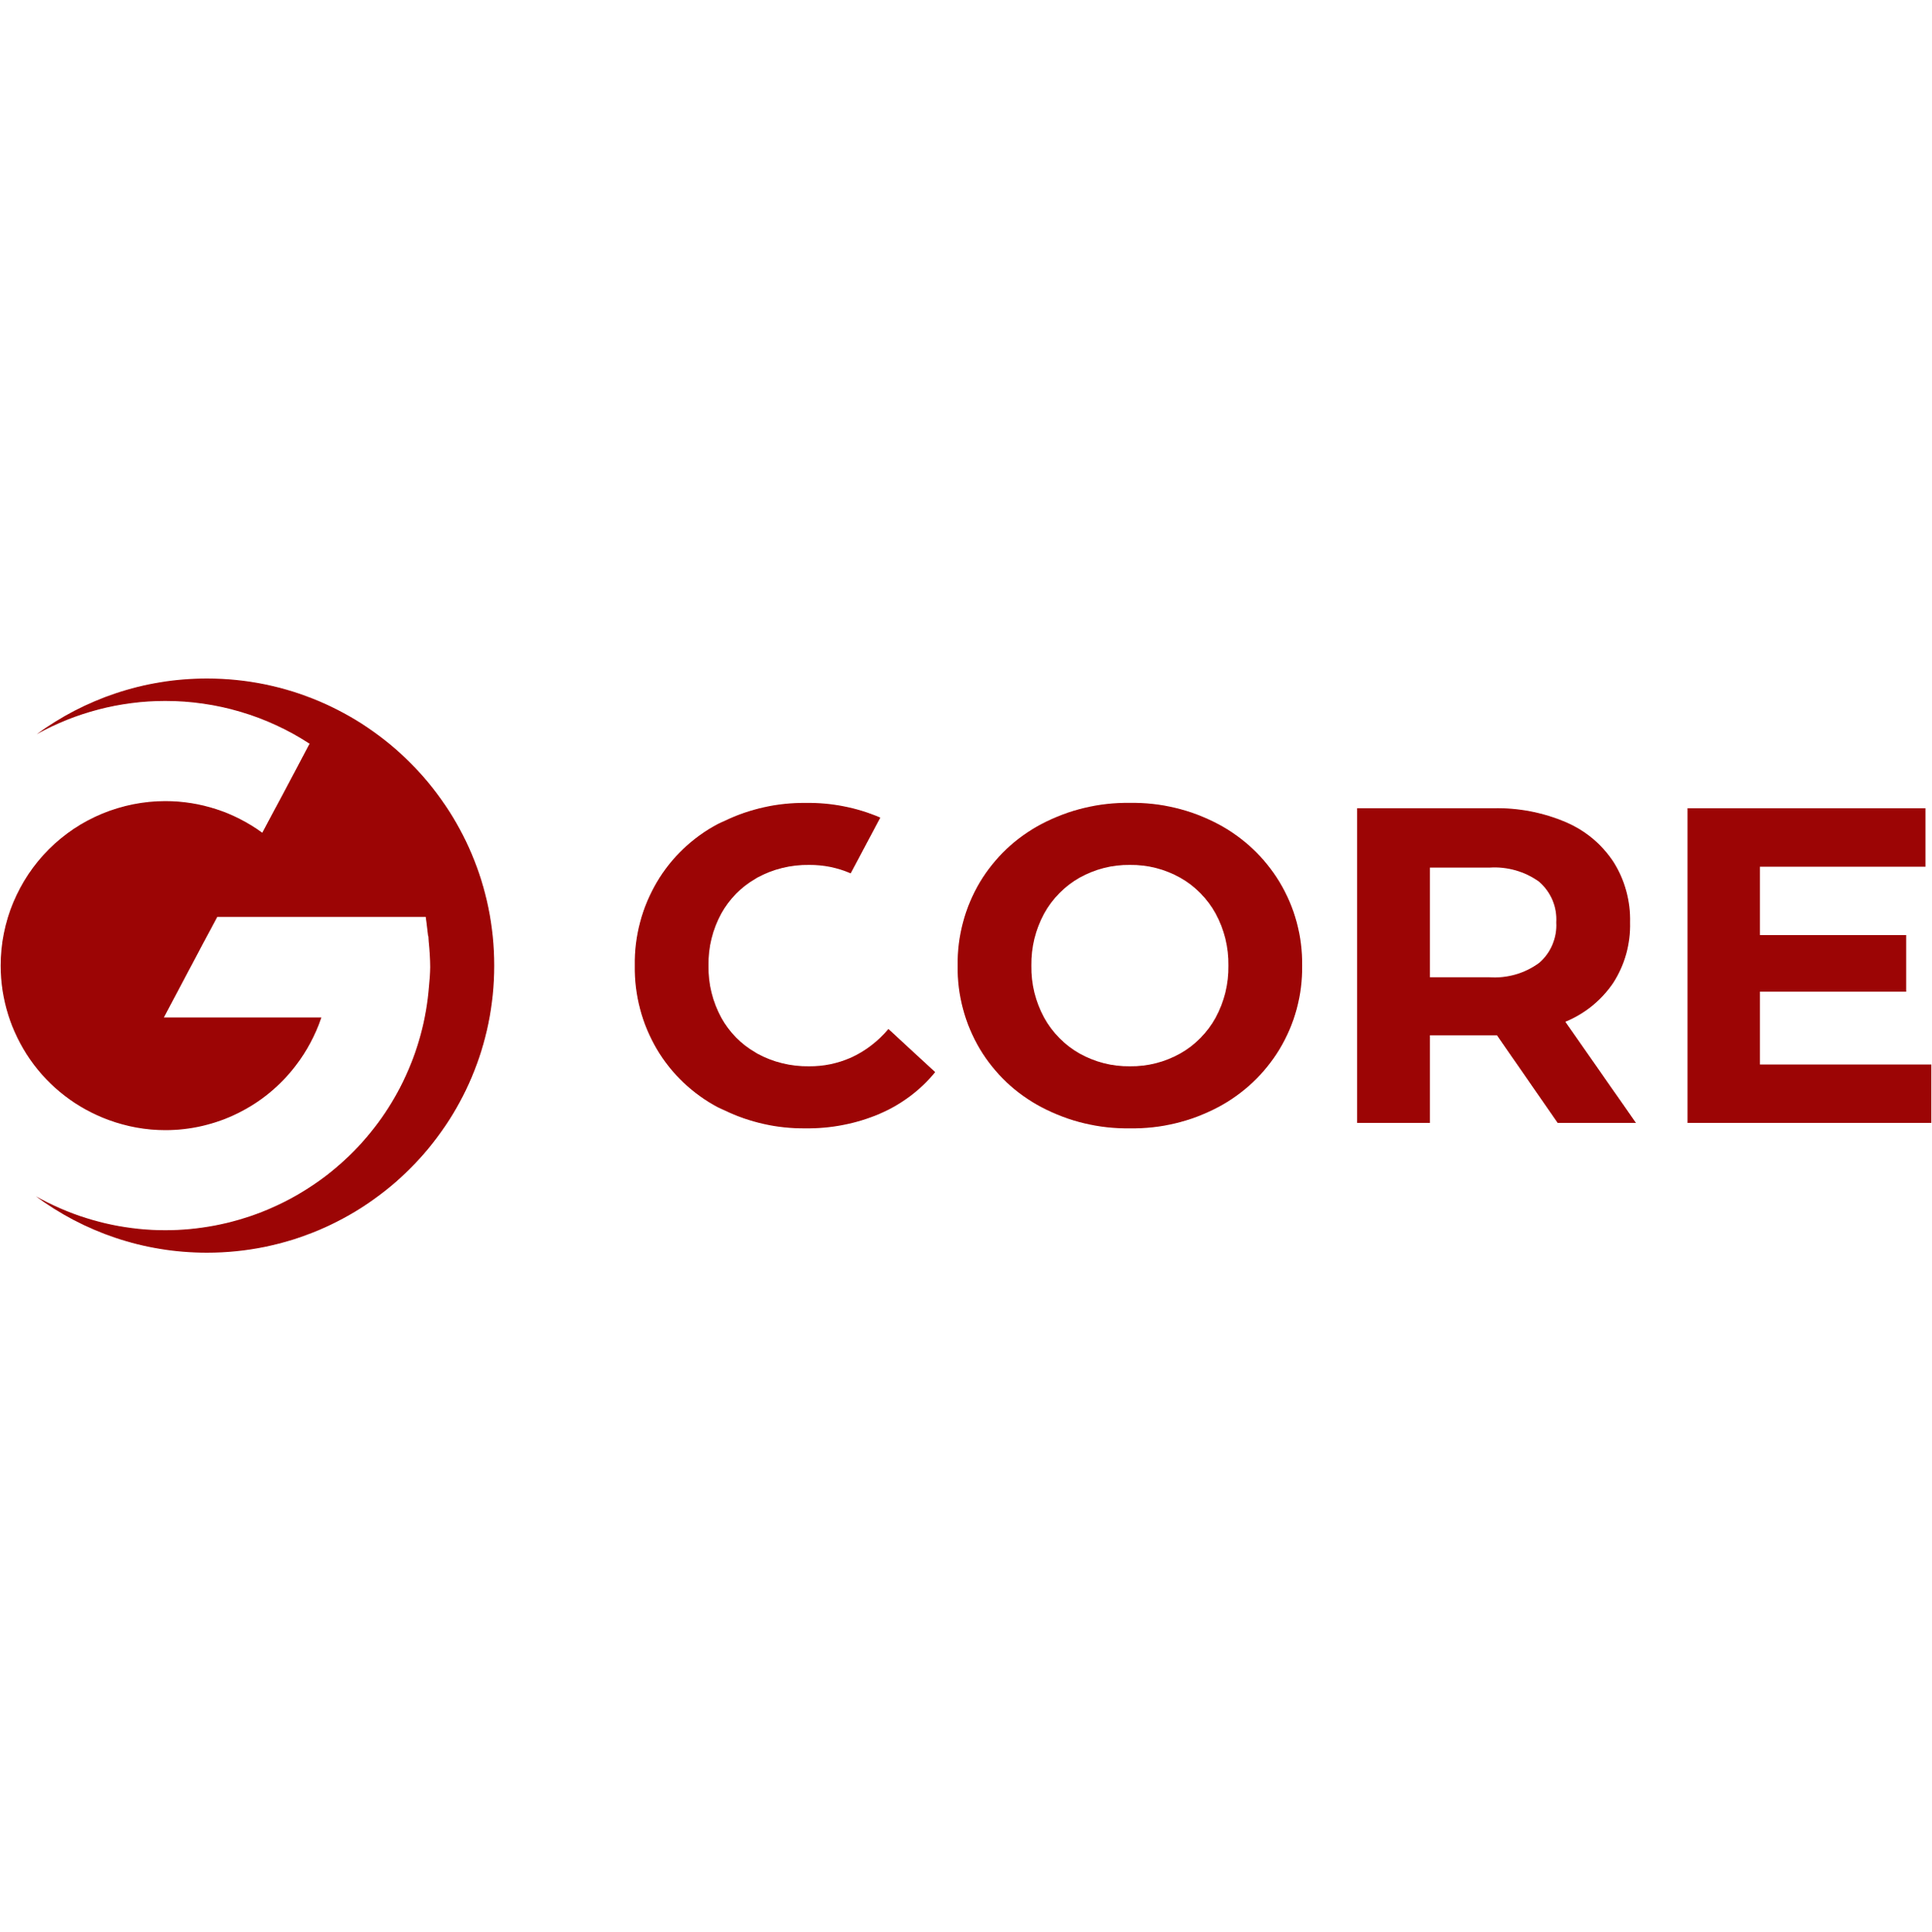 Gcore Logo Transparent Picture